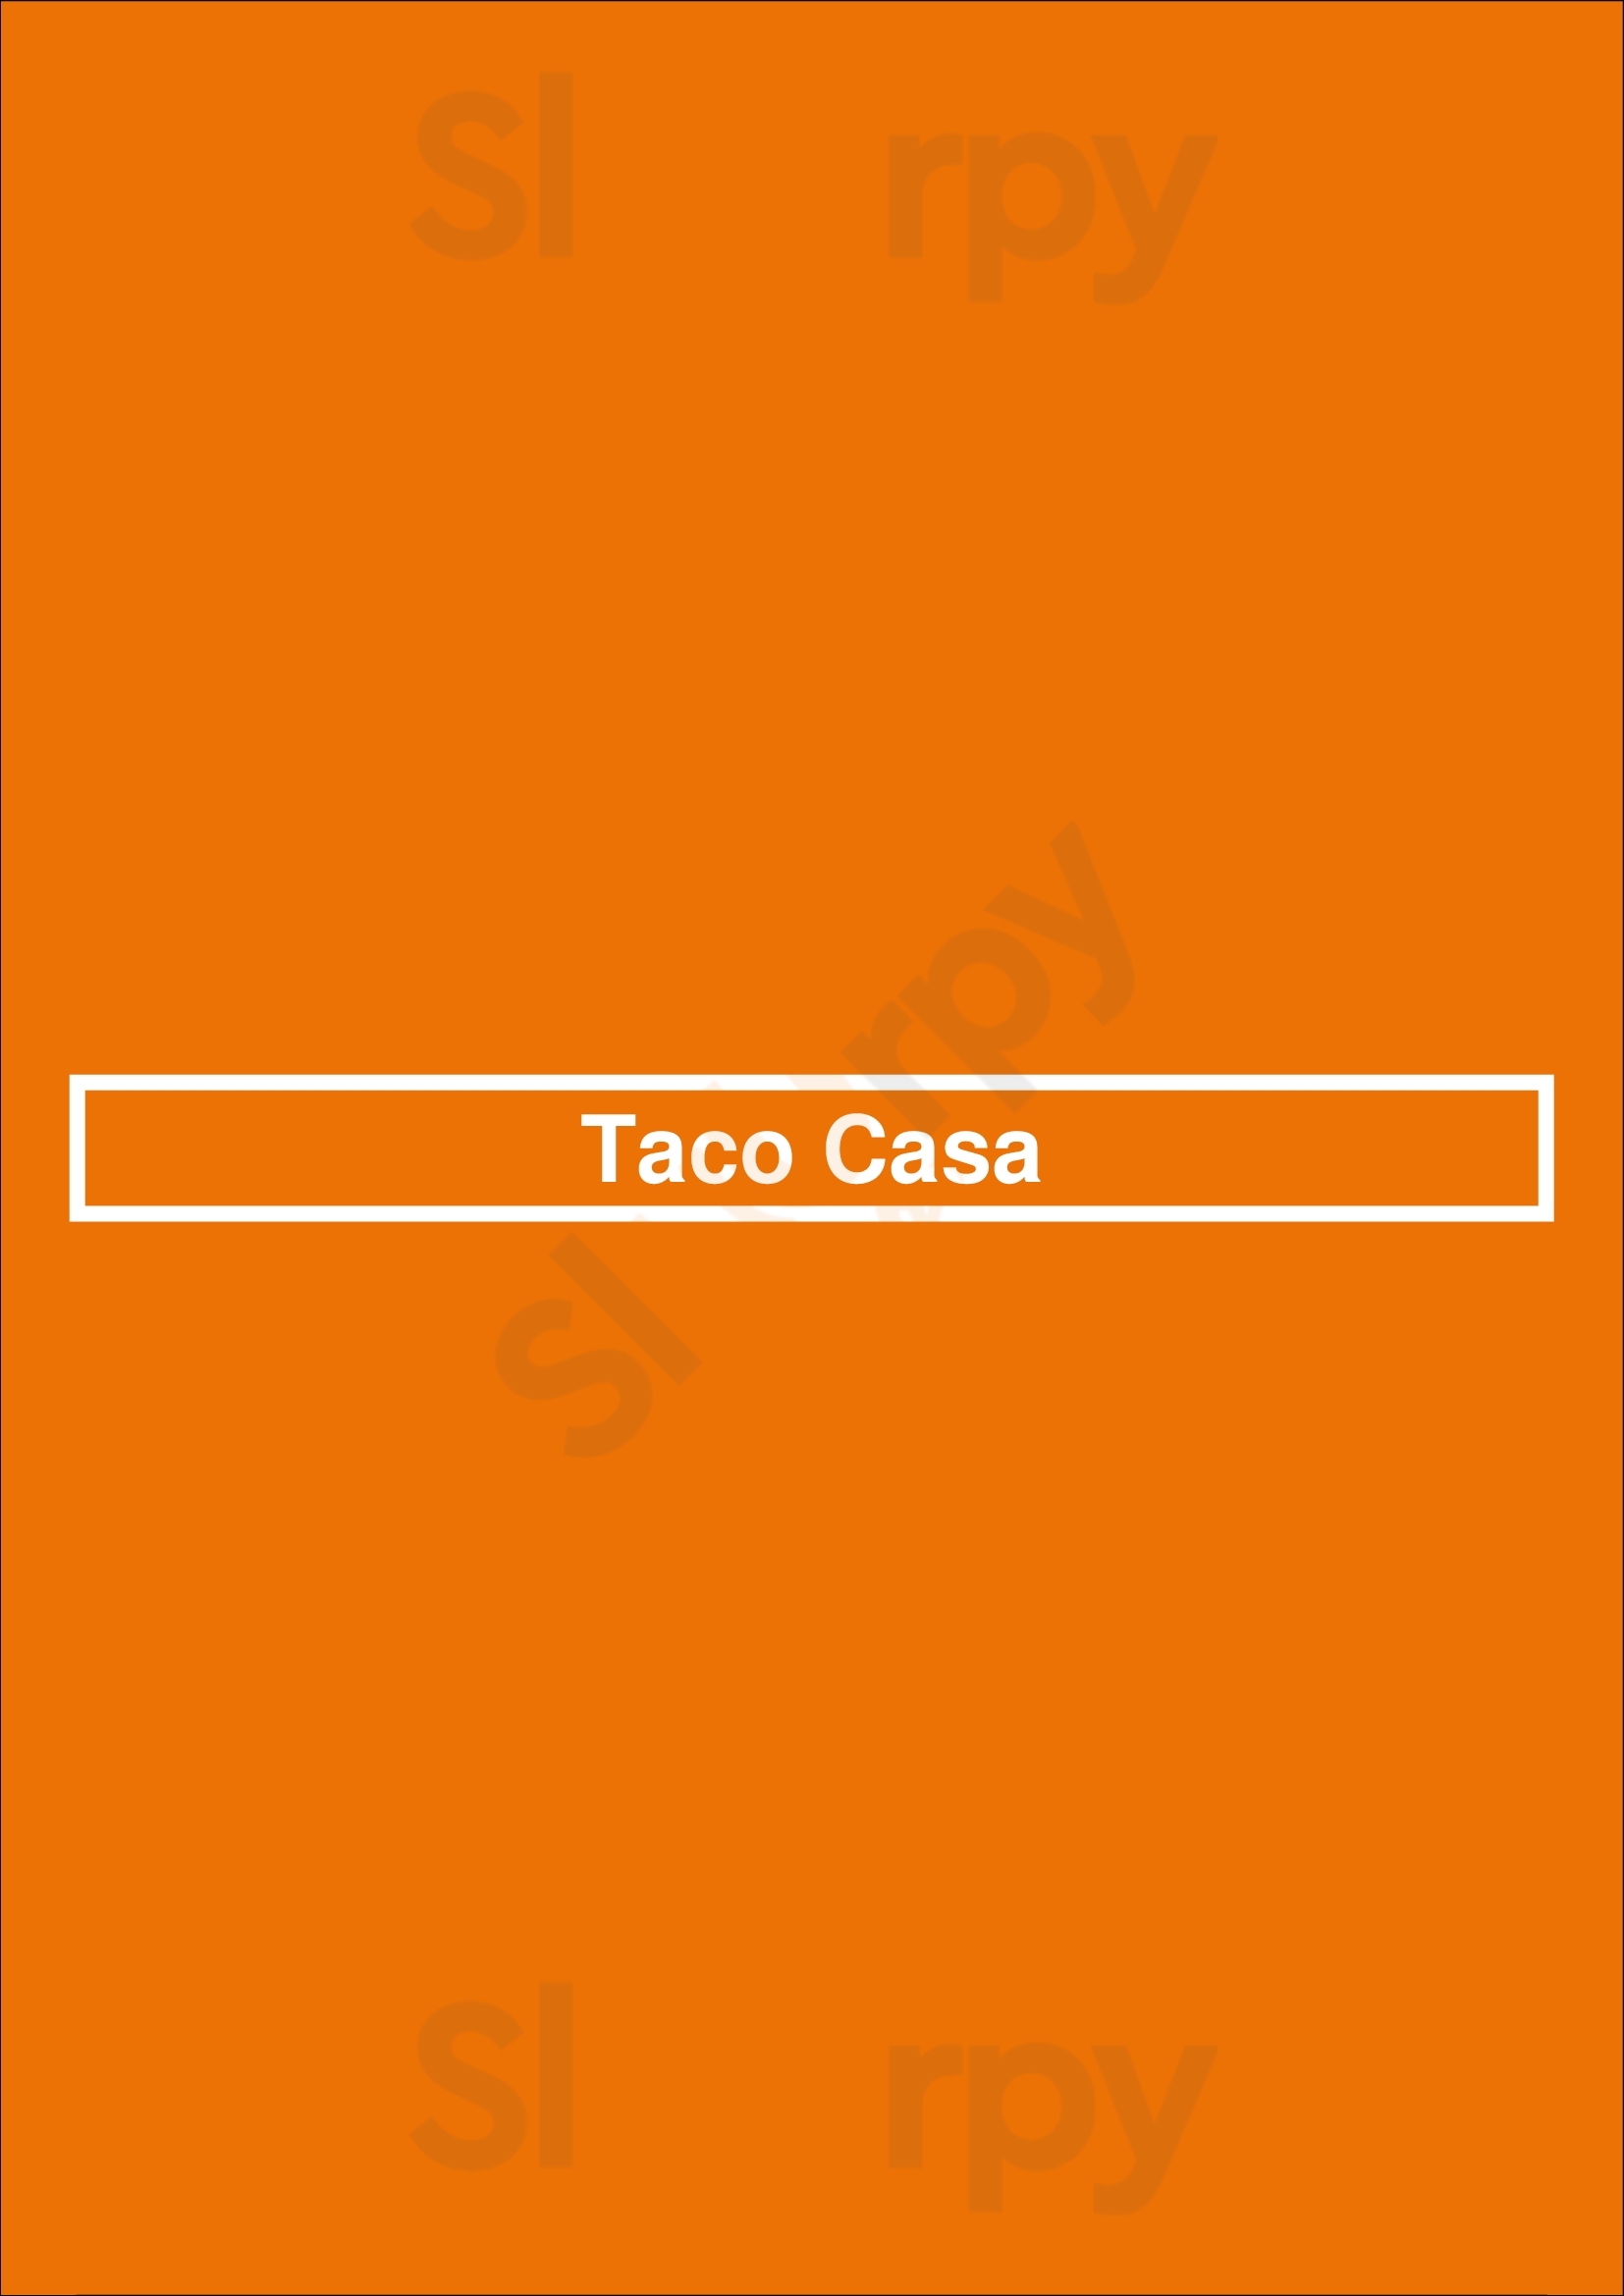 Taco Casa Cypress Menu - 1